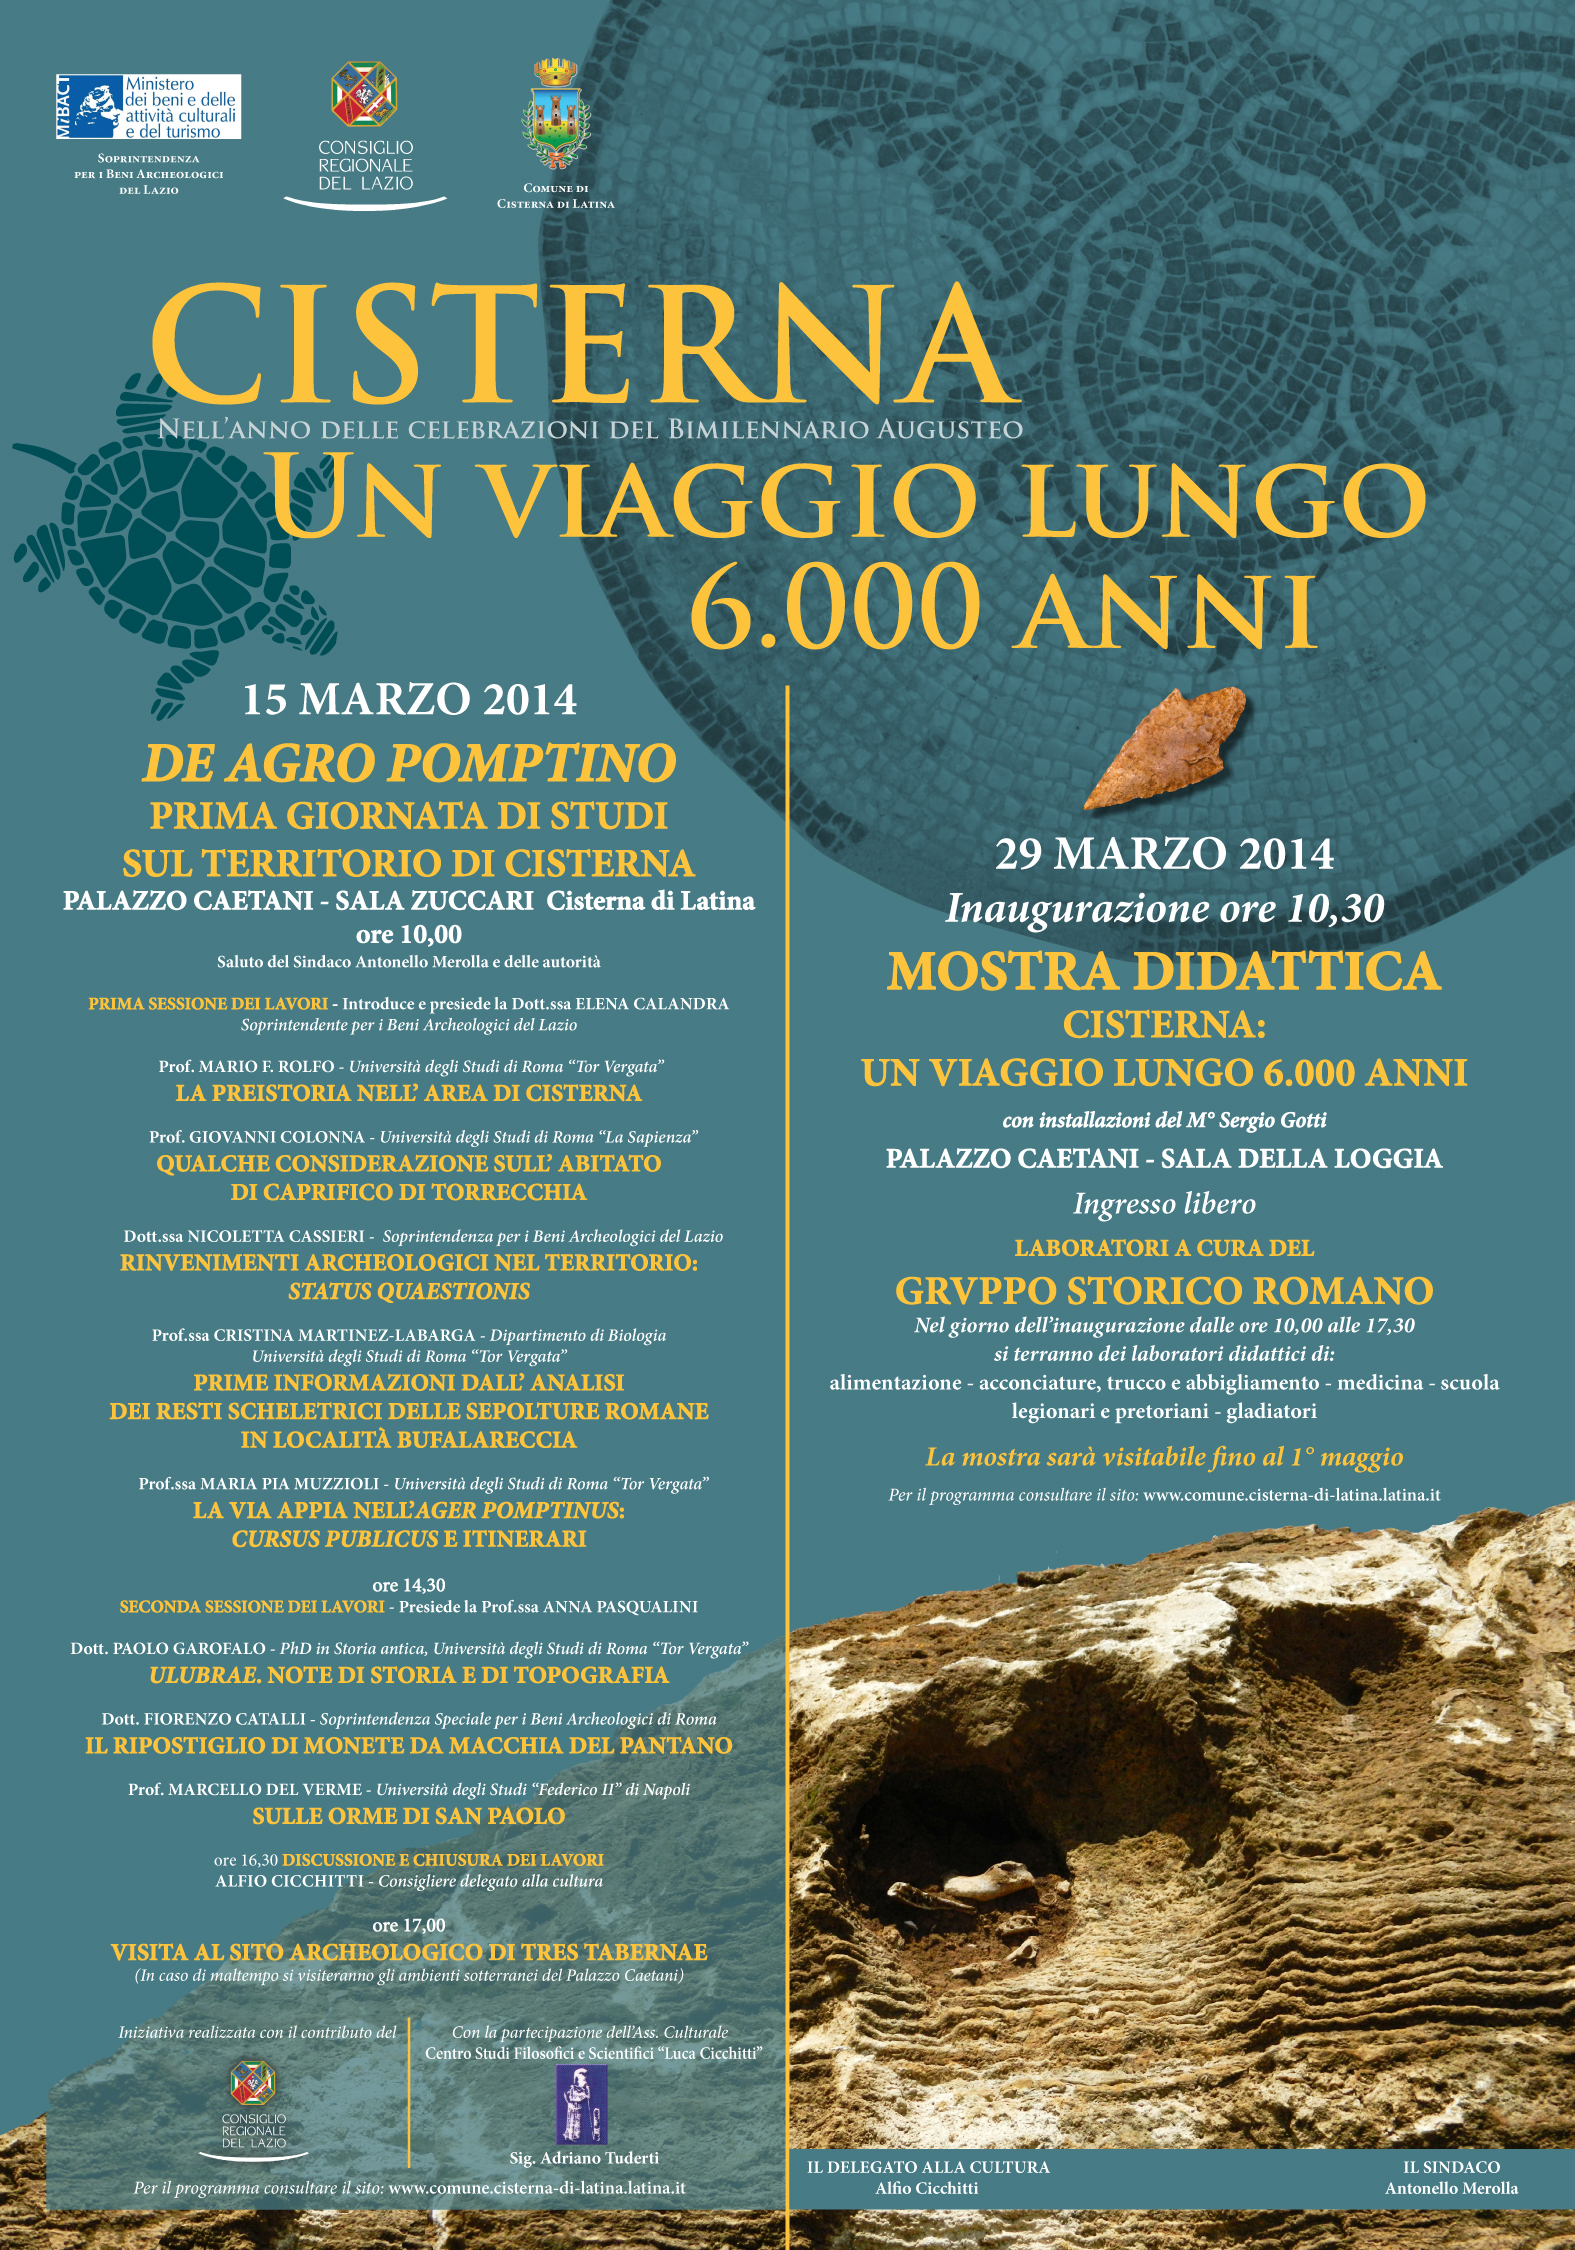 Cisterna: “Un viaggio lungo 6000 anni”, giornata di studi sulla storia del territorio